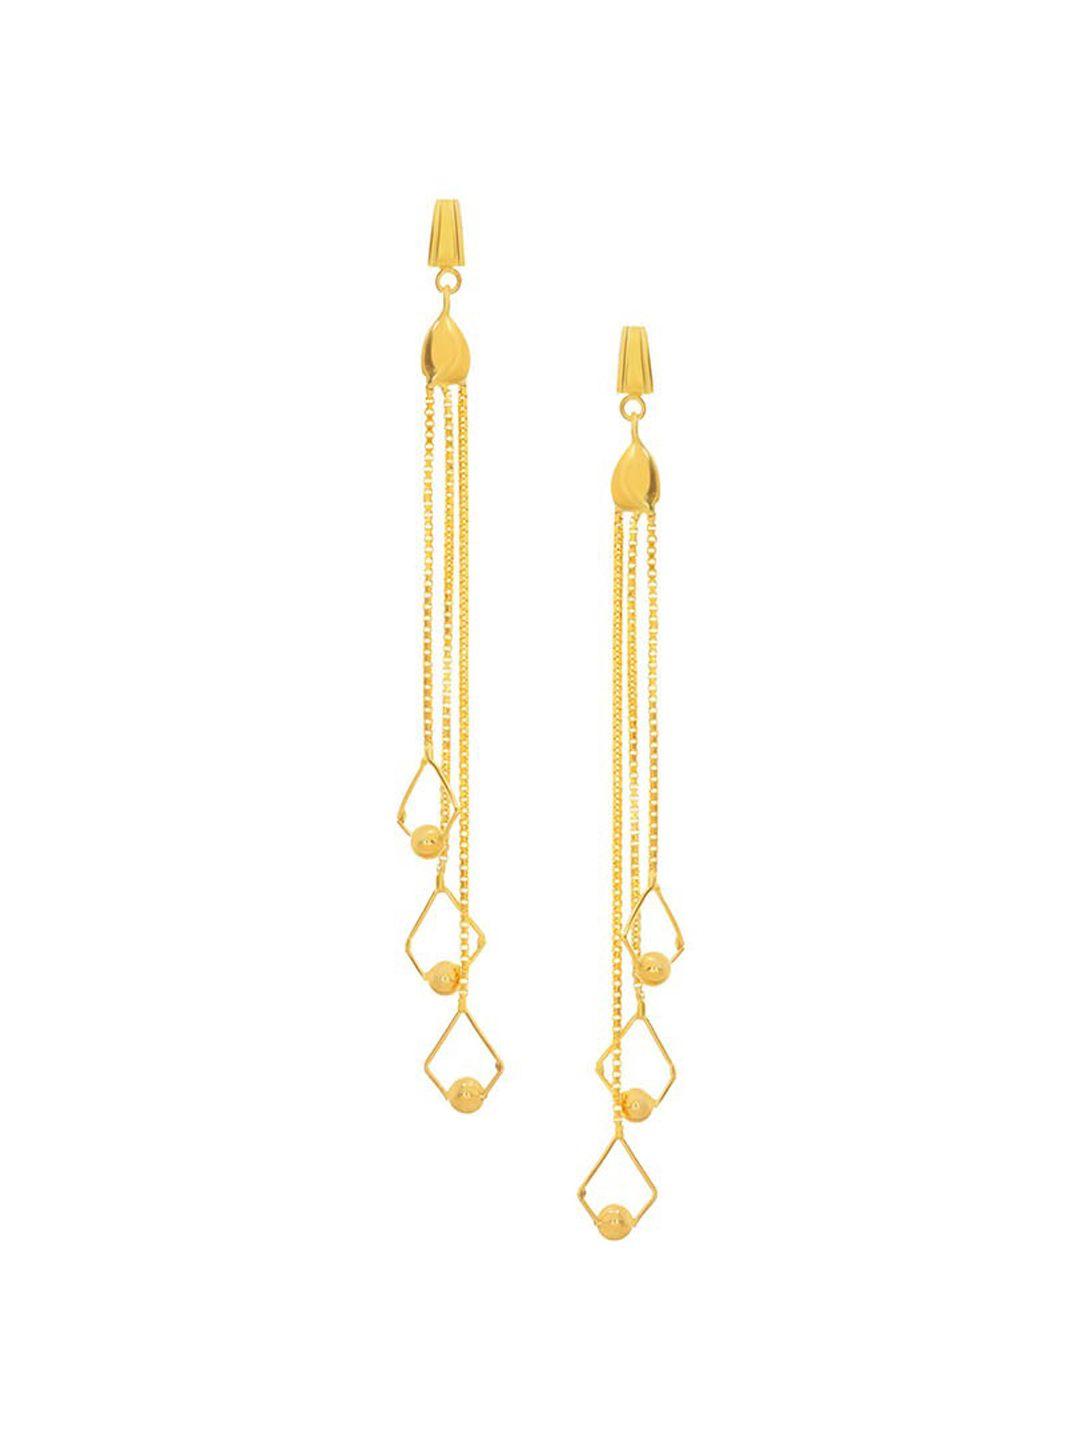 senco enchanting fall 22kt gold drop earrings-4.0gm